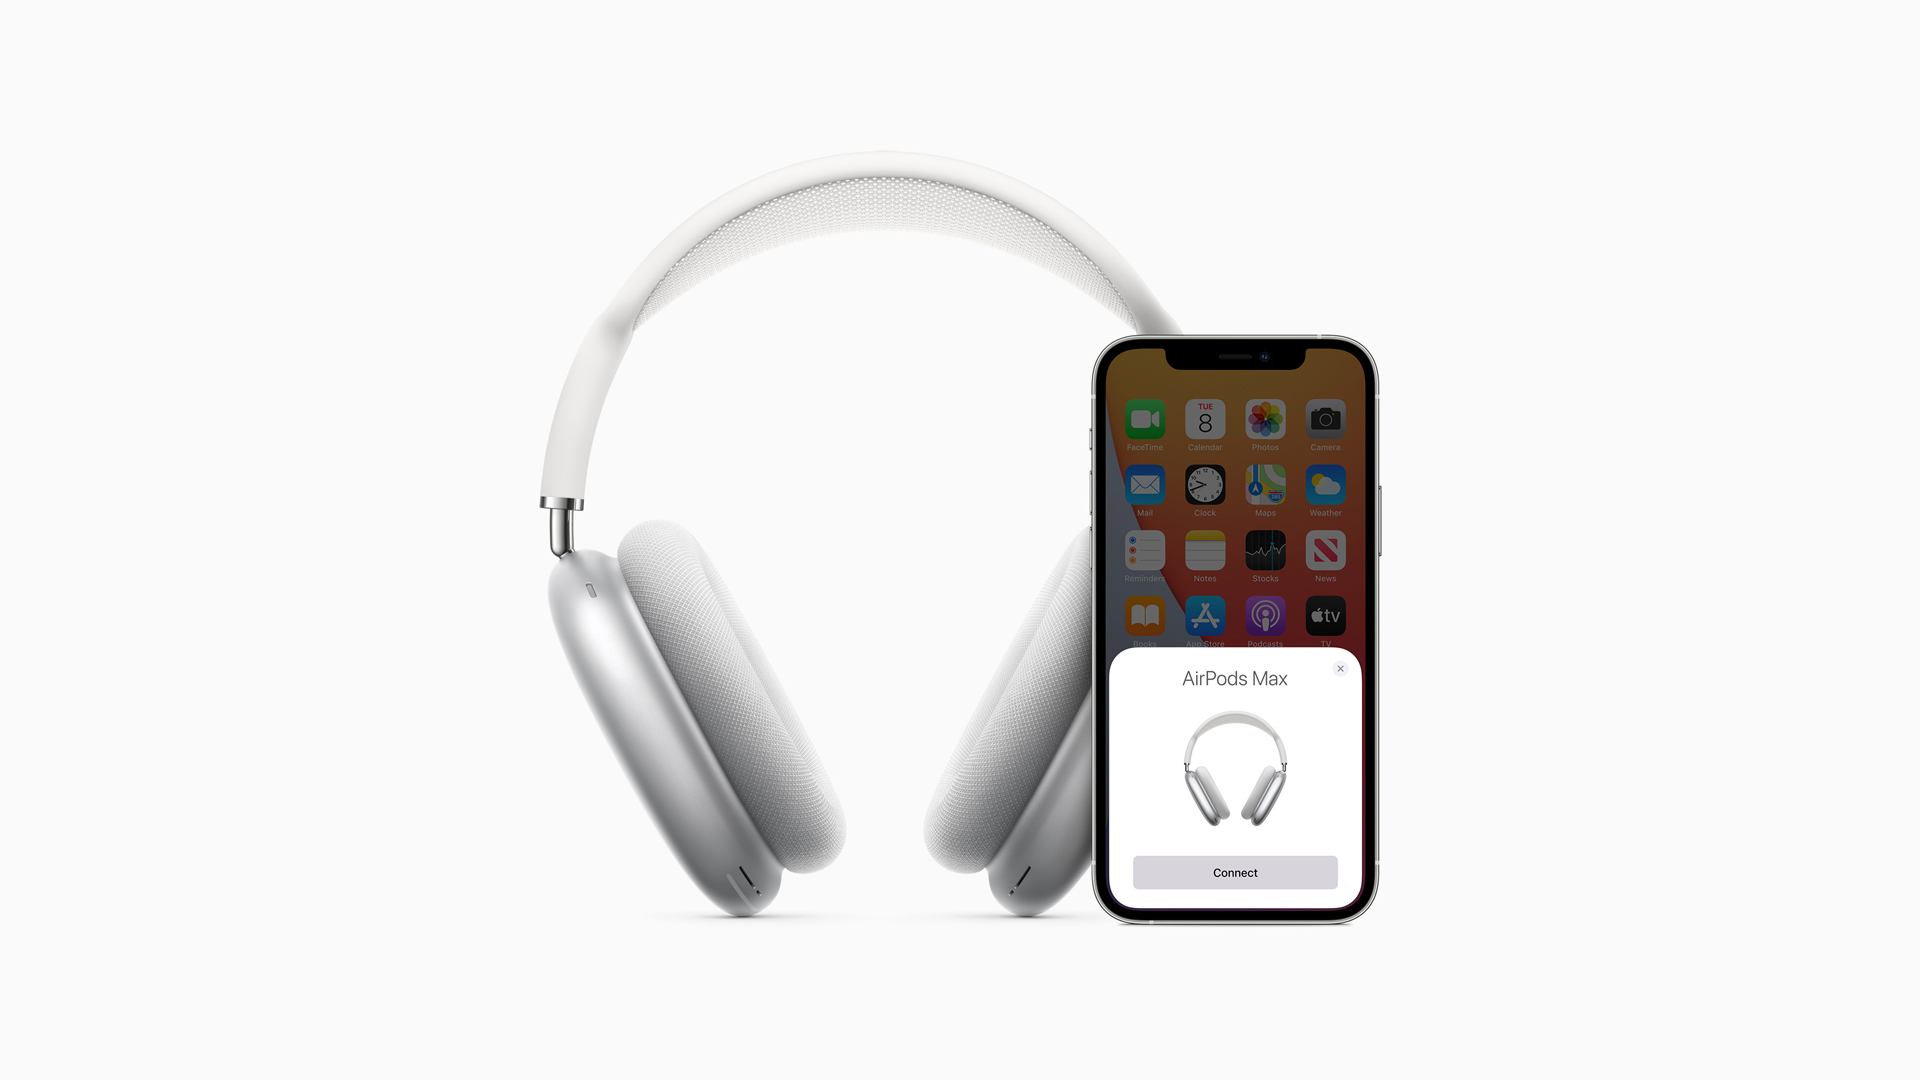 Couplage des AirPods Max avec un téléphone iOS sur fond blanc.